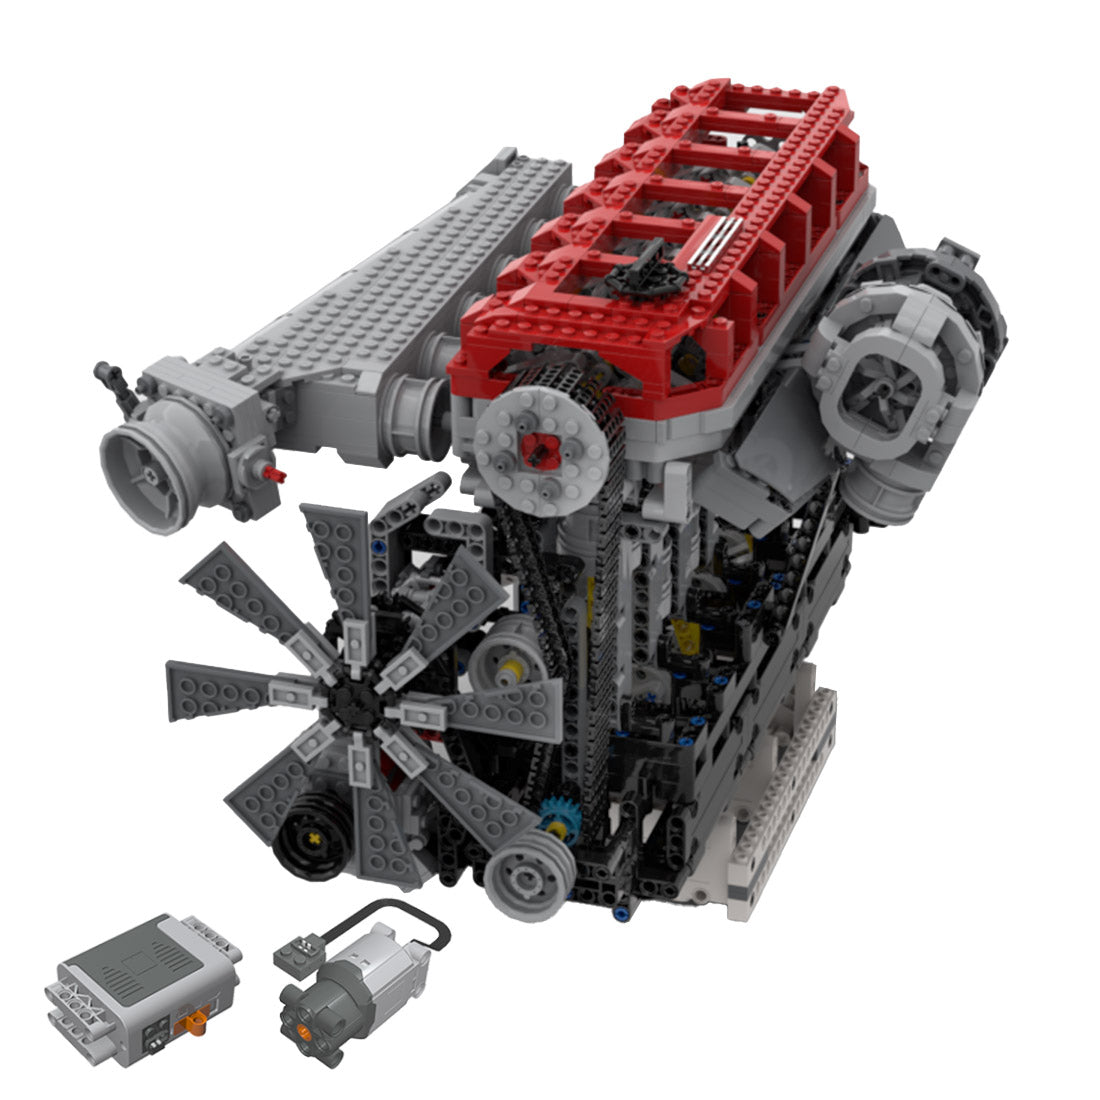 RB30-V4-3.0L Inline Six-cylinder Four-stroke Gasoline Engine